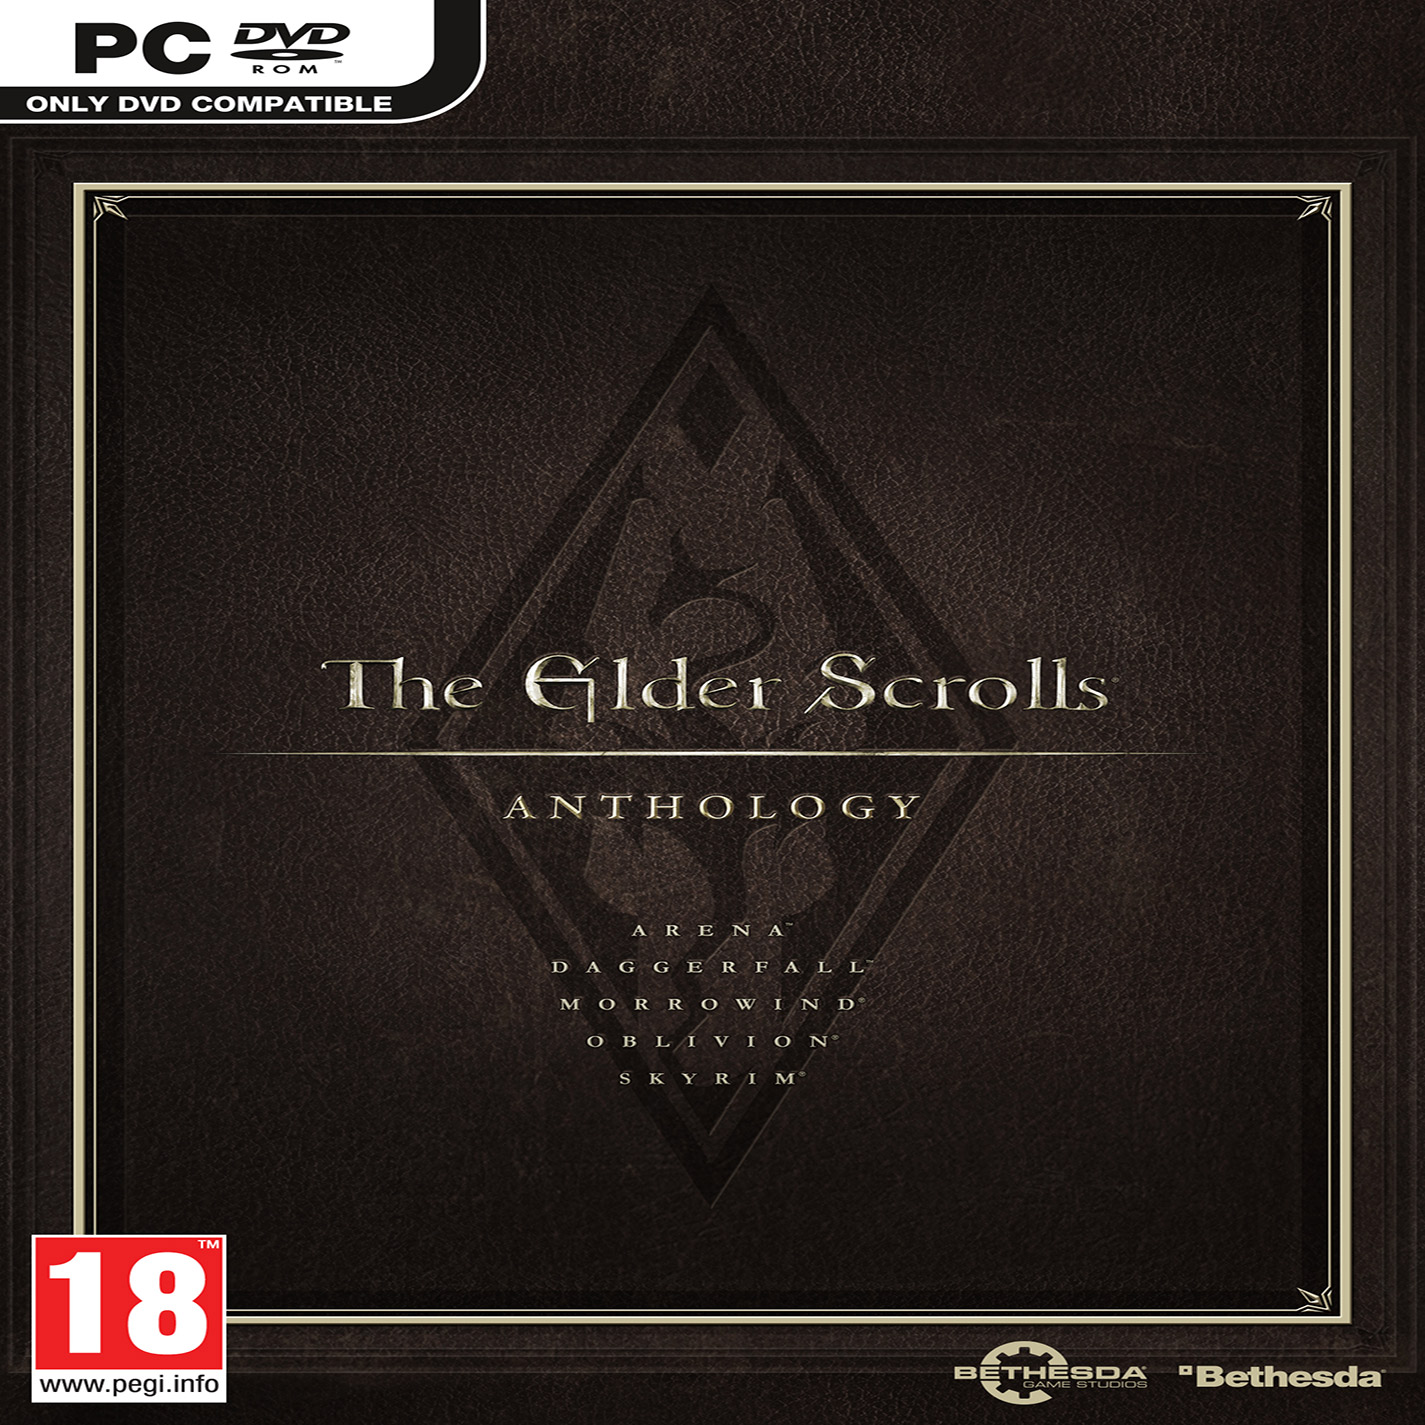 The Elder Scrolls Anthology - pedn CD obal